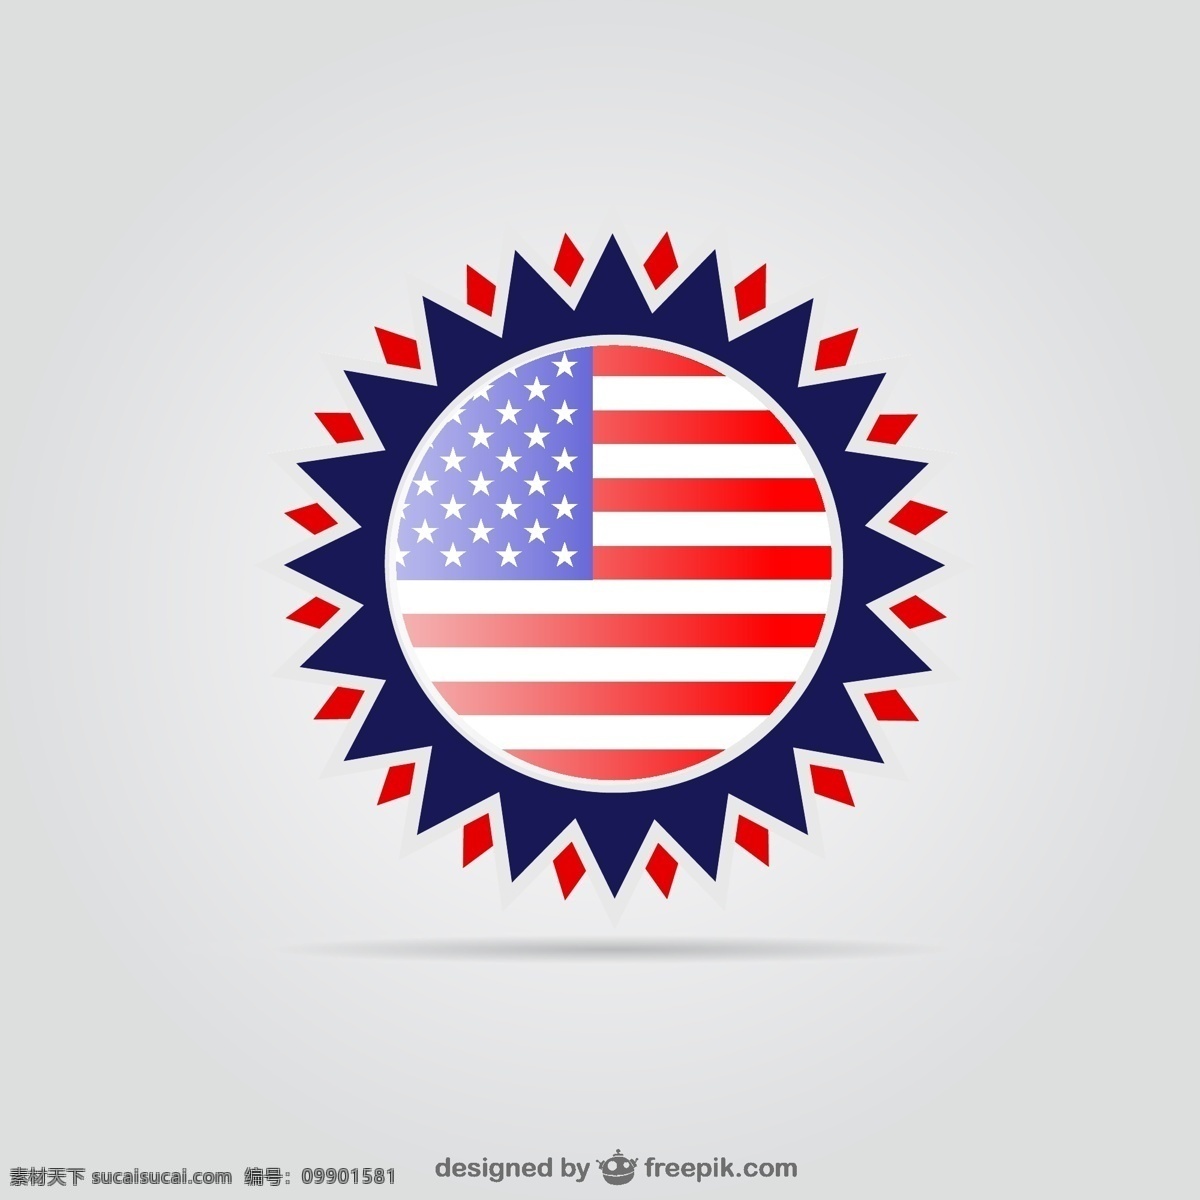 美国国旗徽章 背景 抽象 星 徽章 标志 模板 蓝色背景 蓝色 图形 布局 庆典 帽子 平面设计 元素 插图 白色